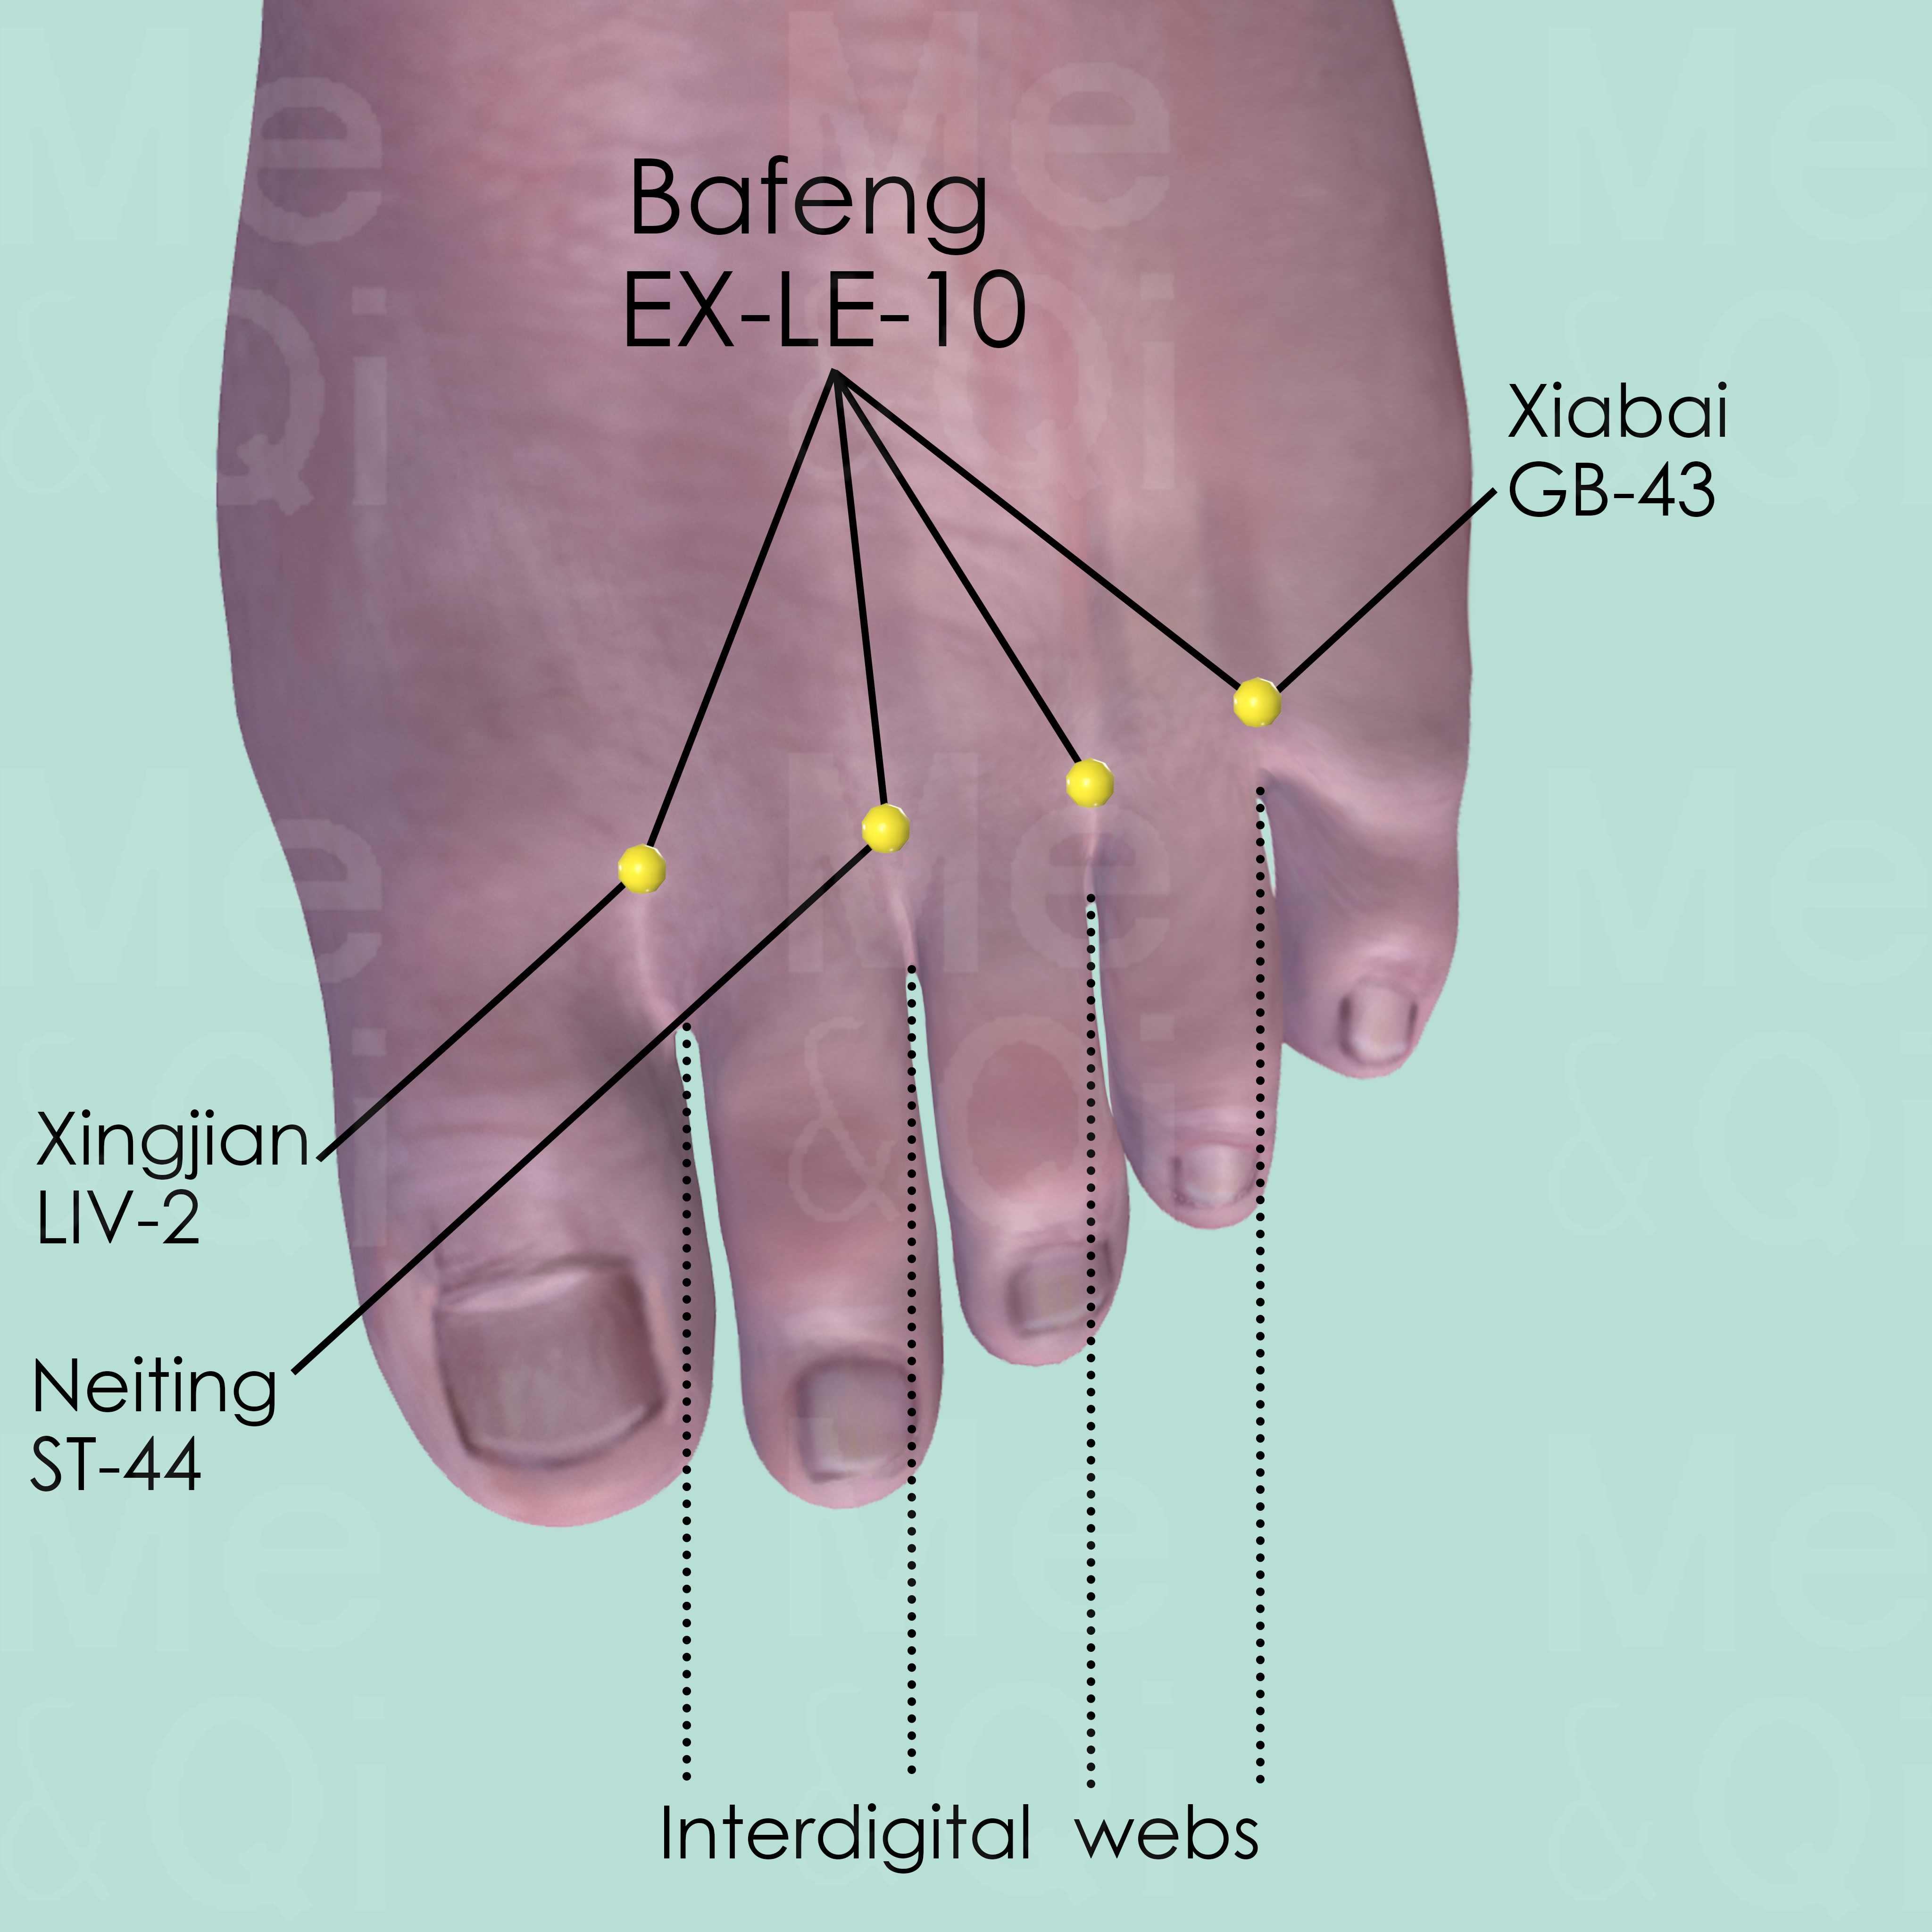 Bafeng EX-LE-10